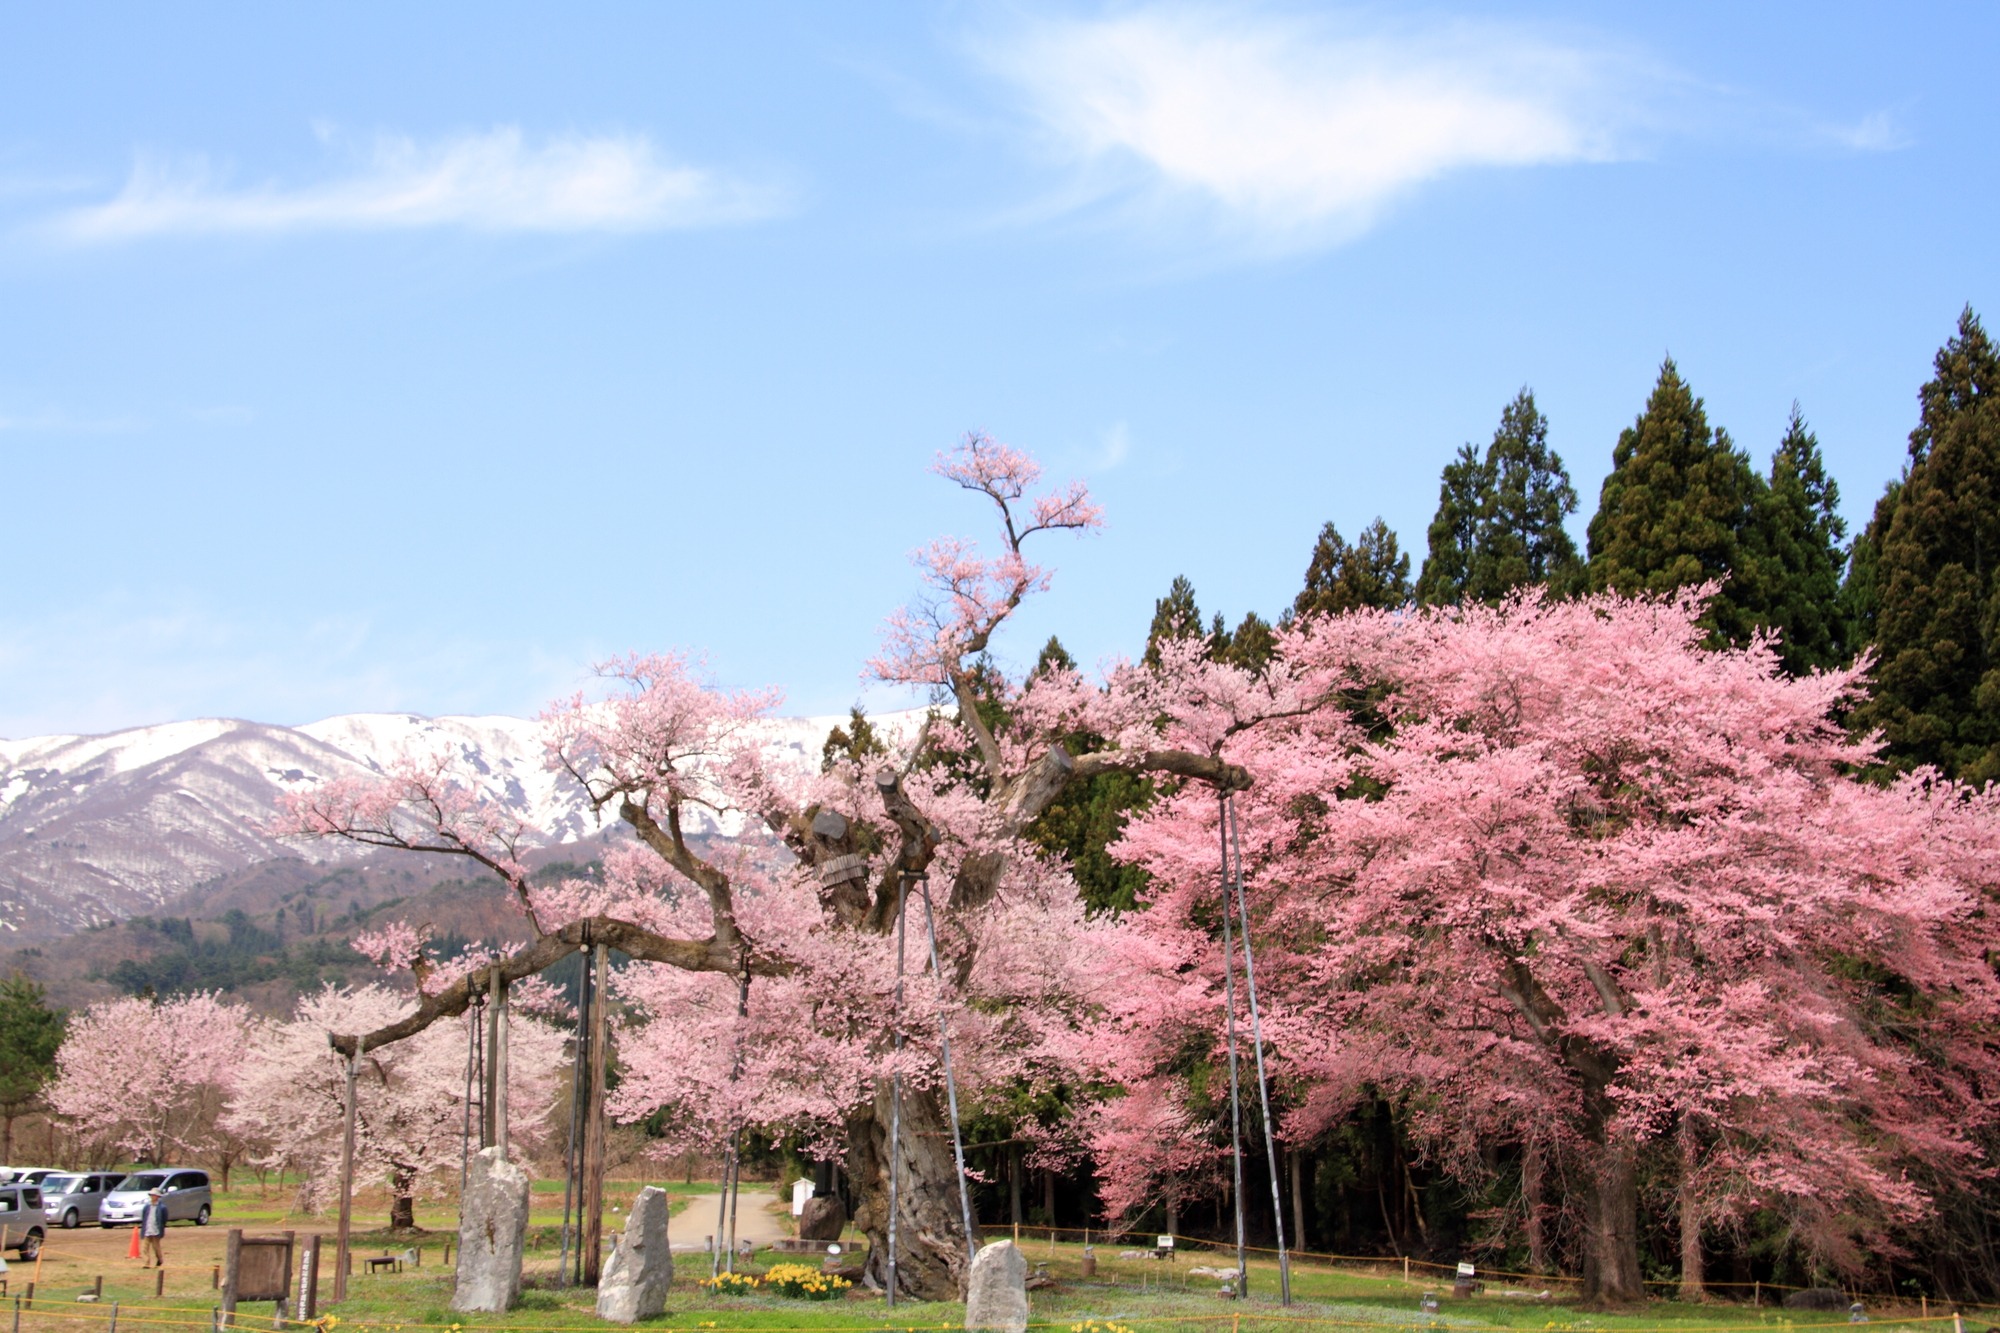 残雪残る山々と鮮やかな桜が奏でる美景観